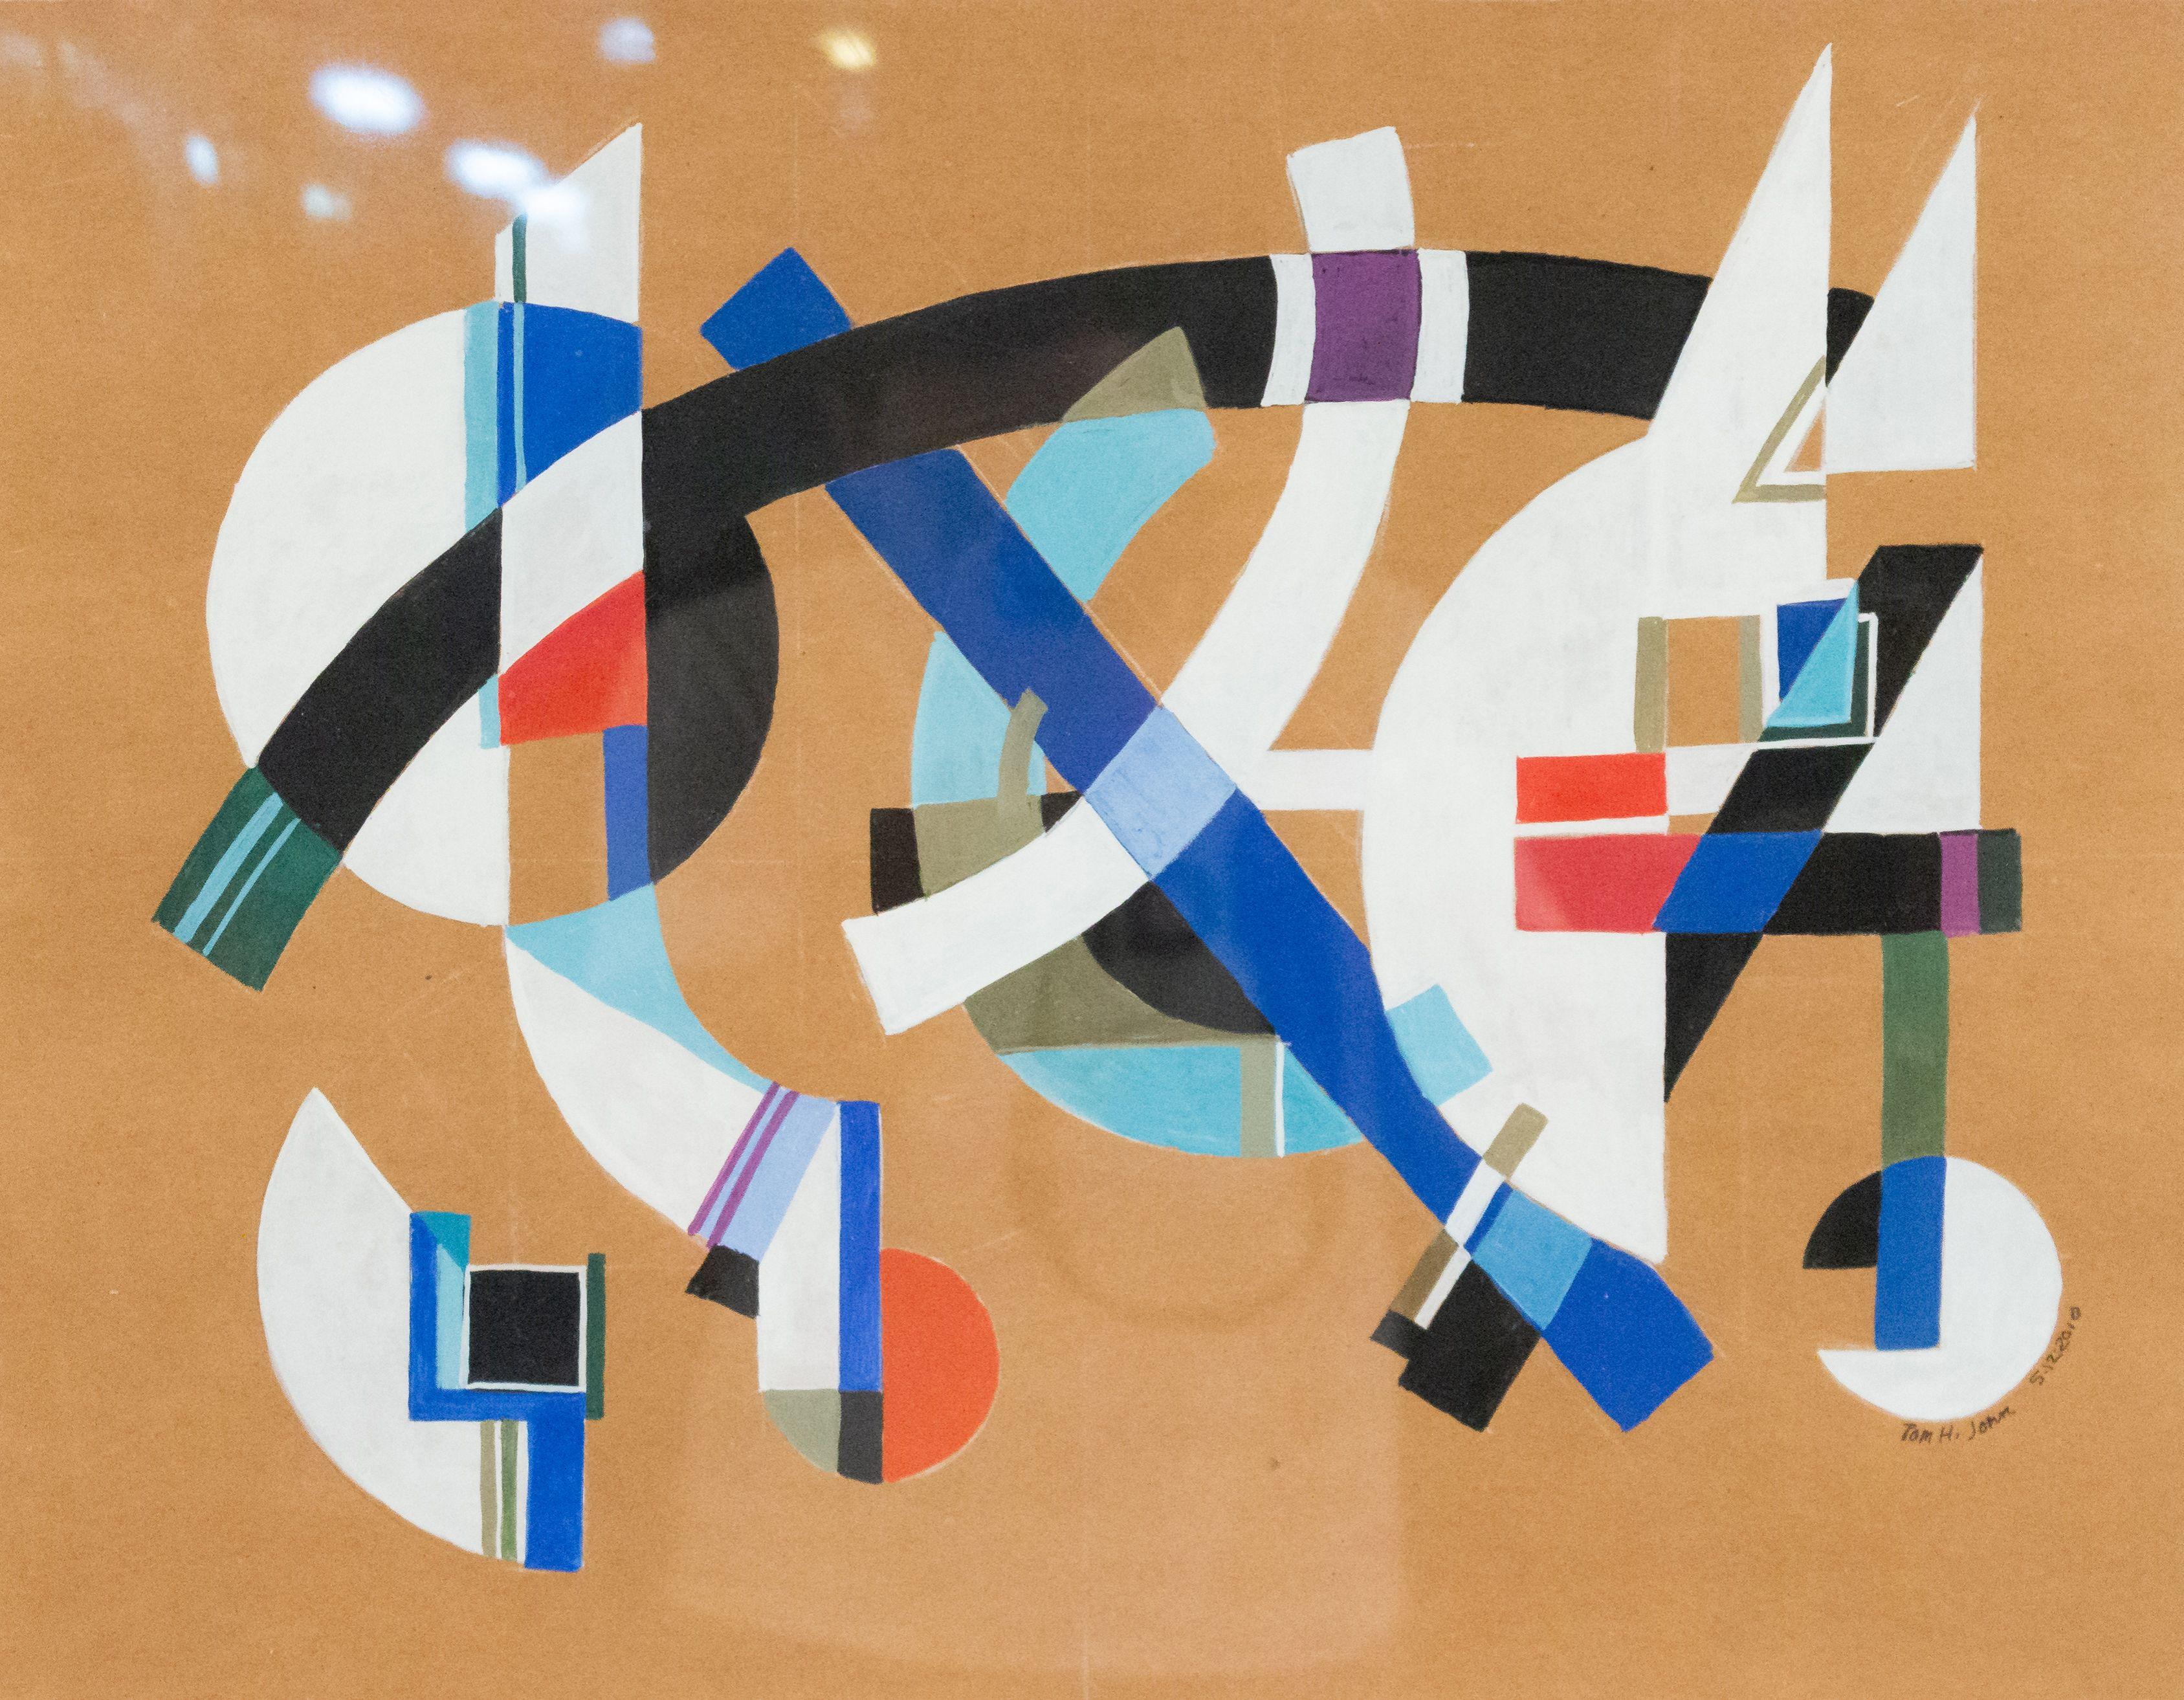 Peinture abstraite contemporaine à la gouache et au crayon sur papier dans un cadre rectangulaire noir (TOM JOHN, 2010).
 